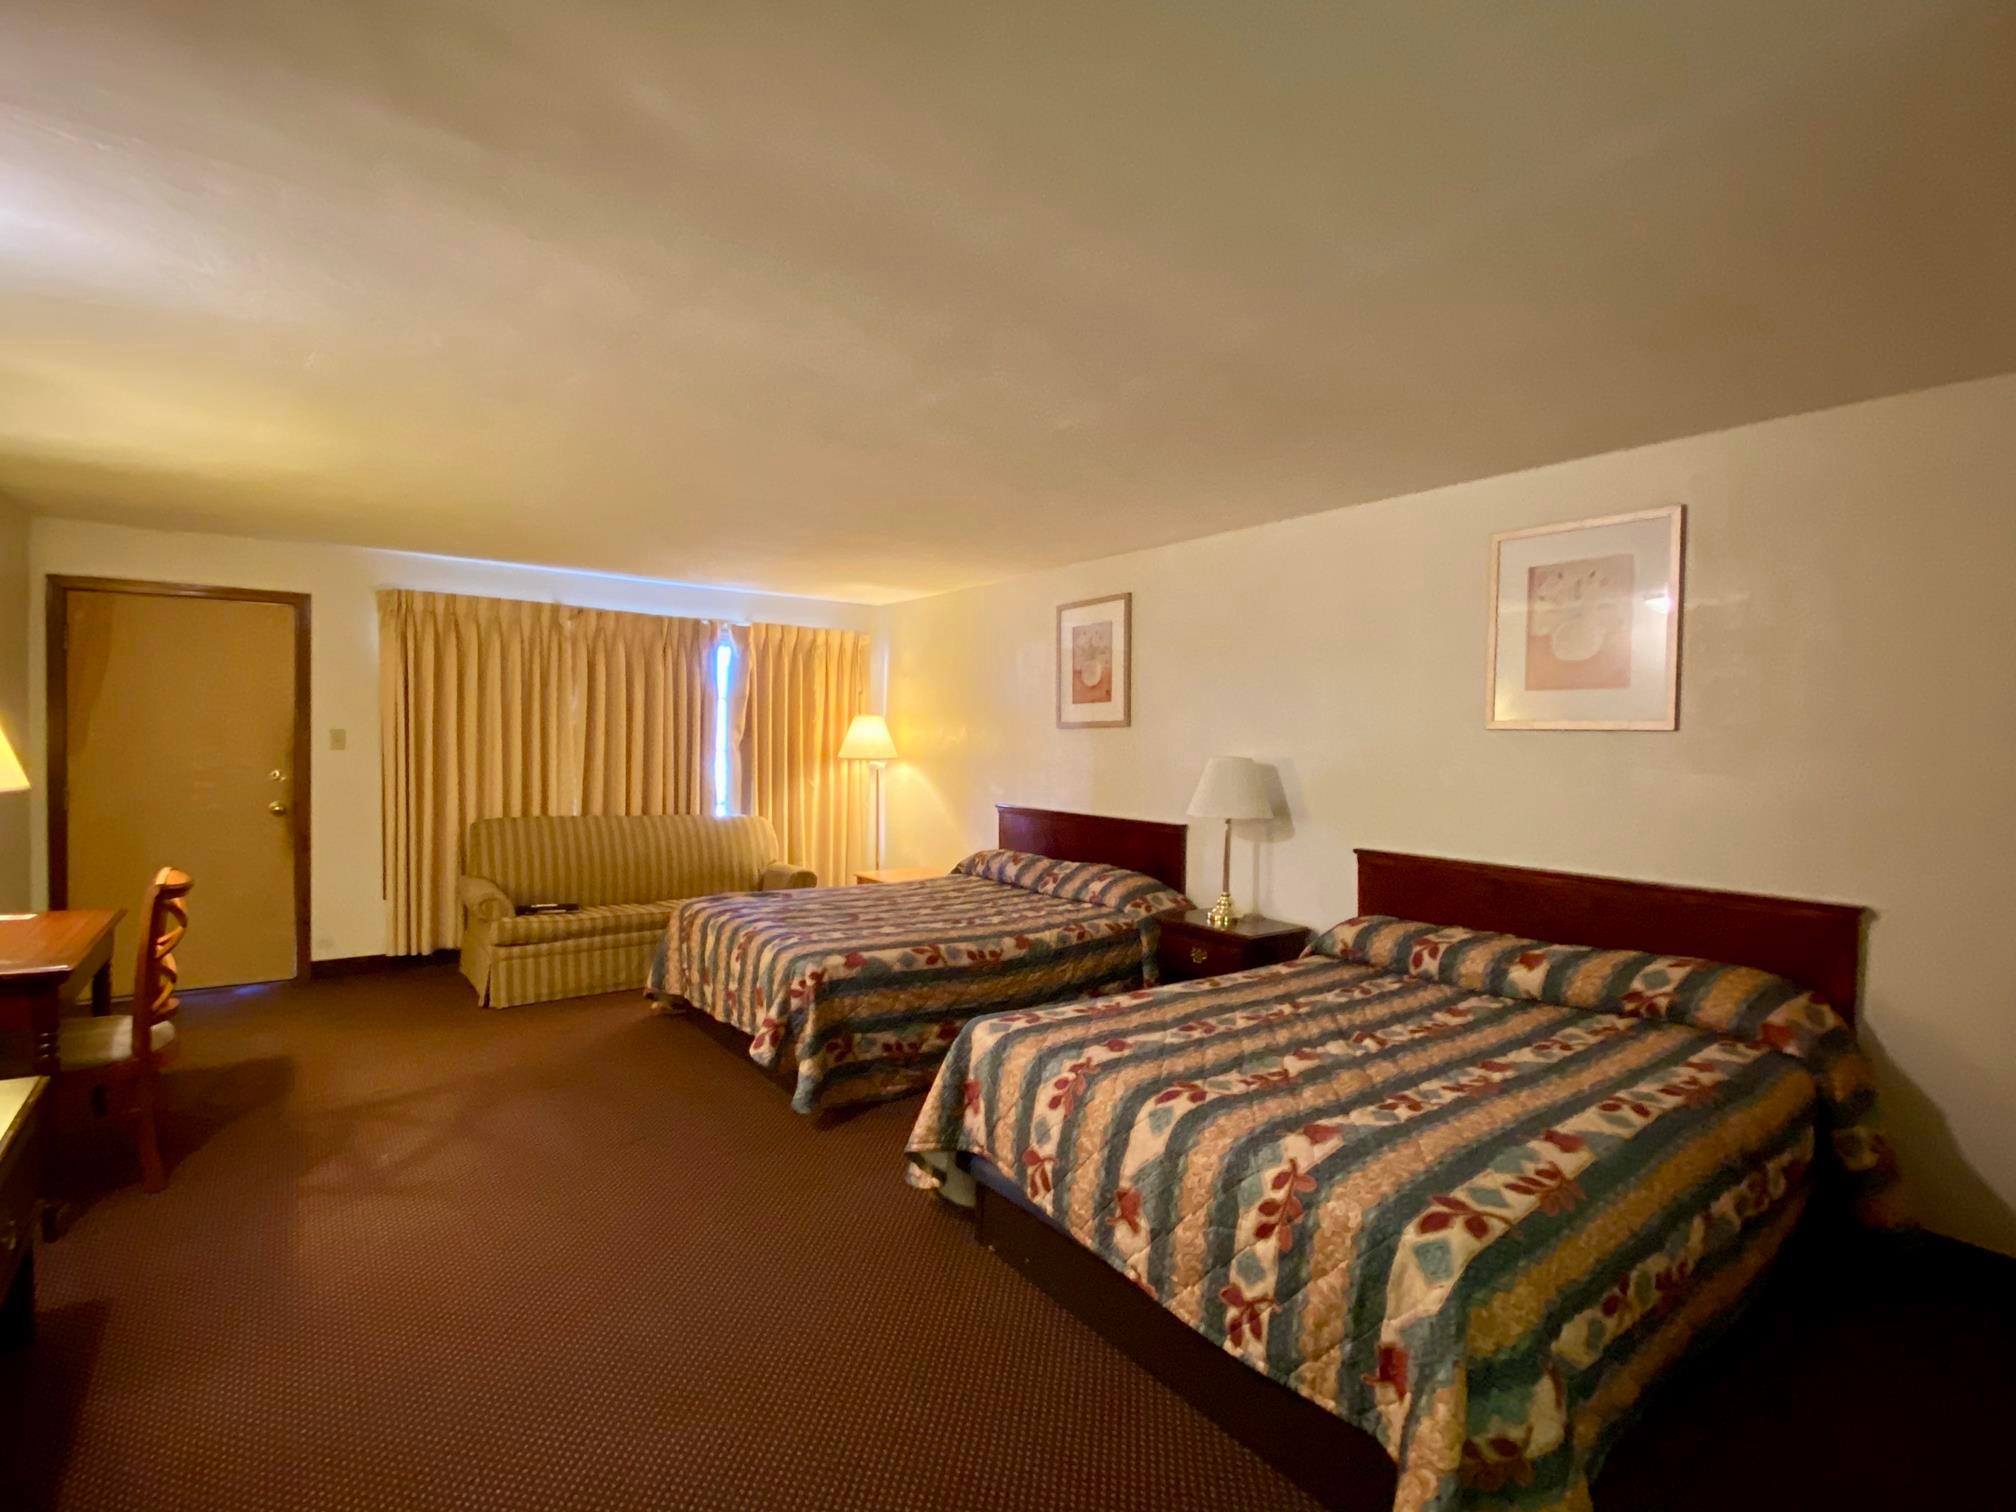 39 Room Motel Sold to the Highest Bidder